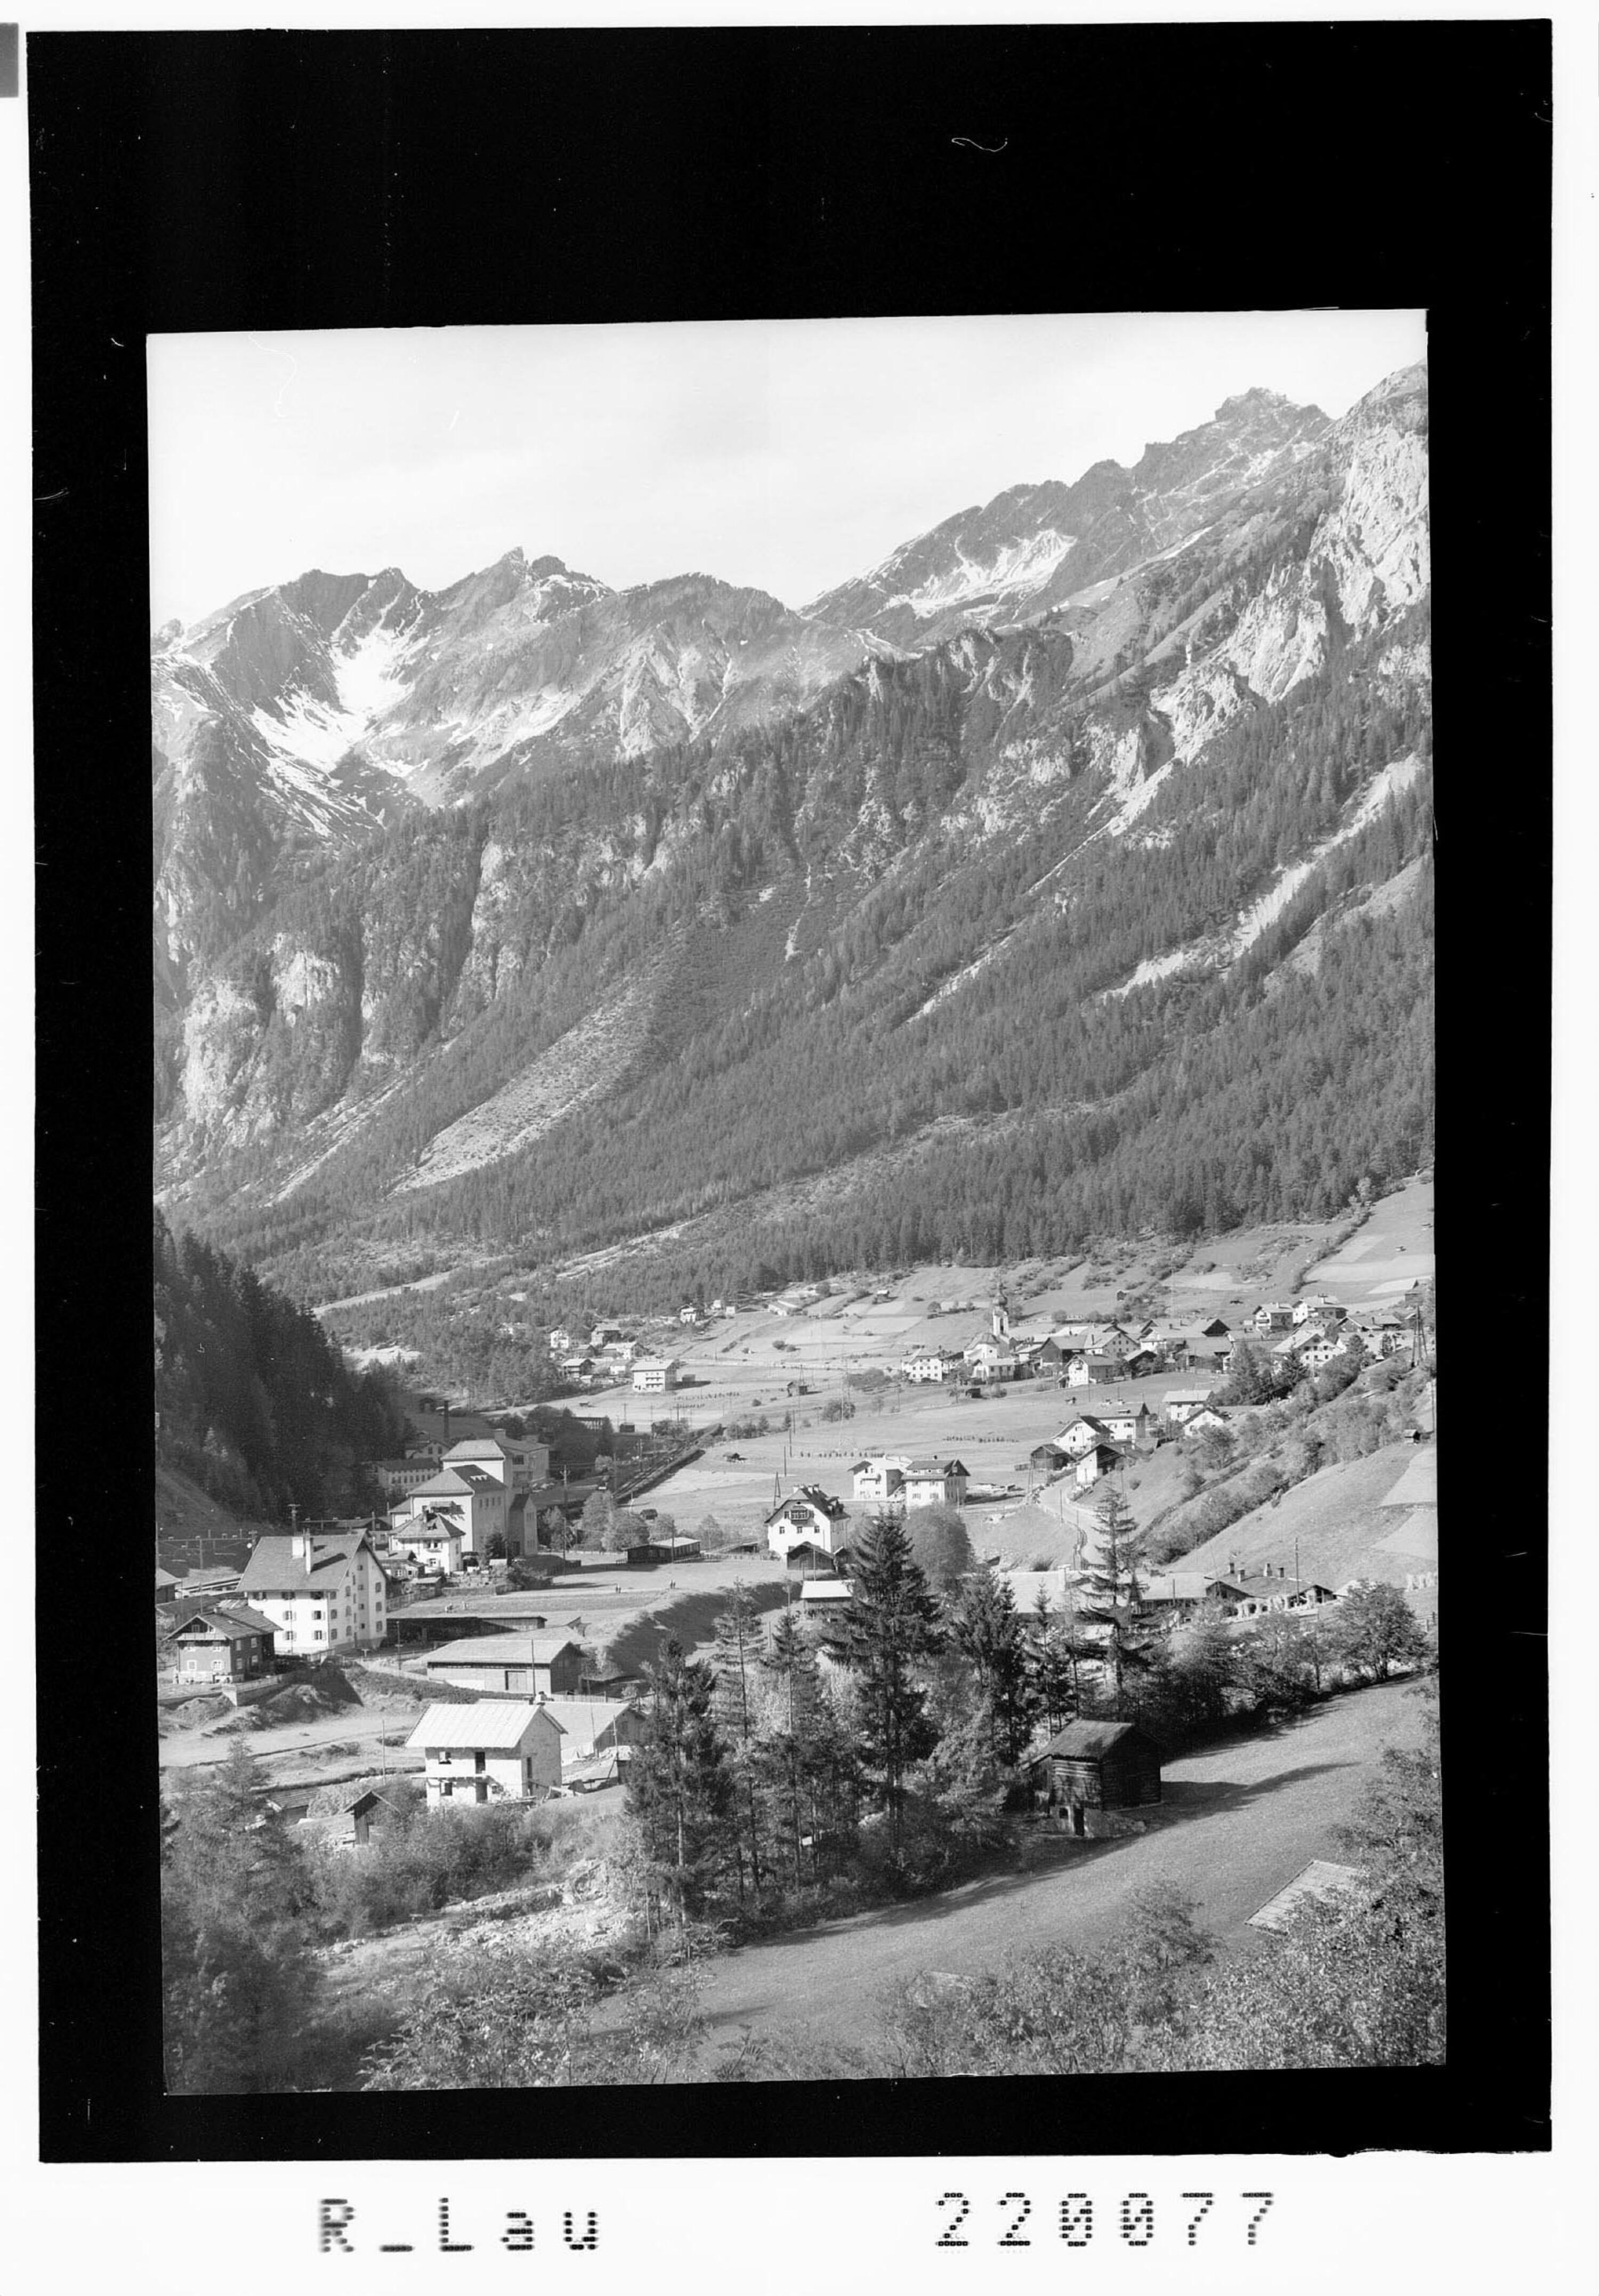 Flirsch an der Arlbergstrasse 1157 m gegen Lechtaler Berge></div>


    <hr>
    <div class=